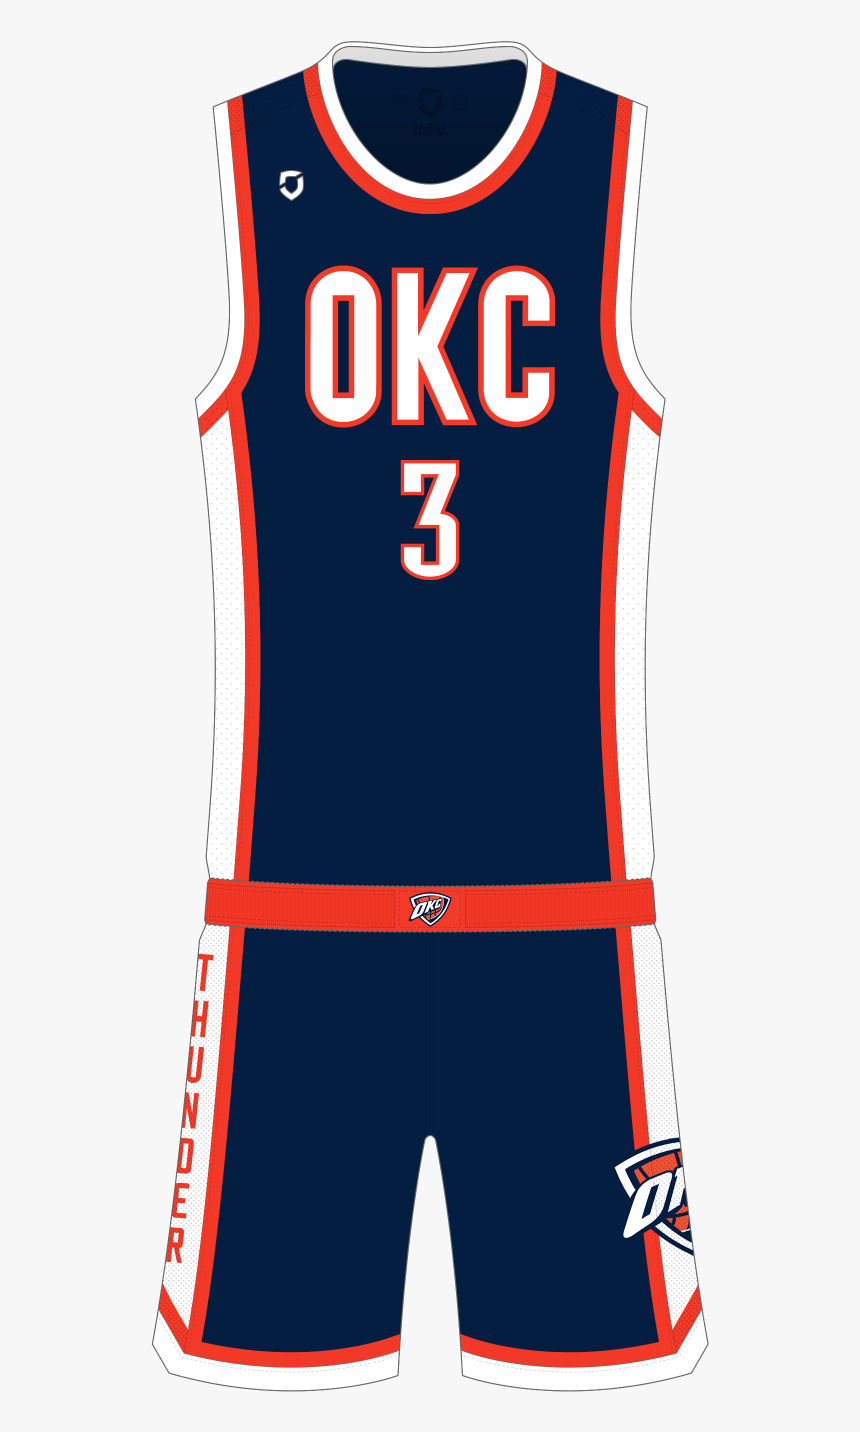 Oklahoma City Thunder Away - Oklahoma City Thunder Uniform Shorts, HD Png Download, Free Download